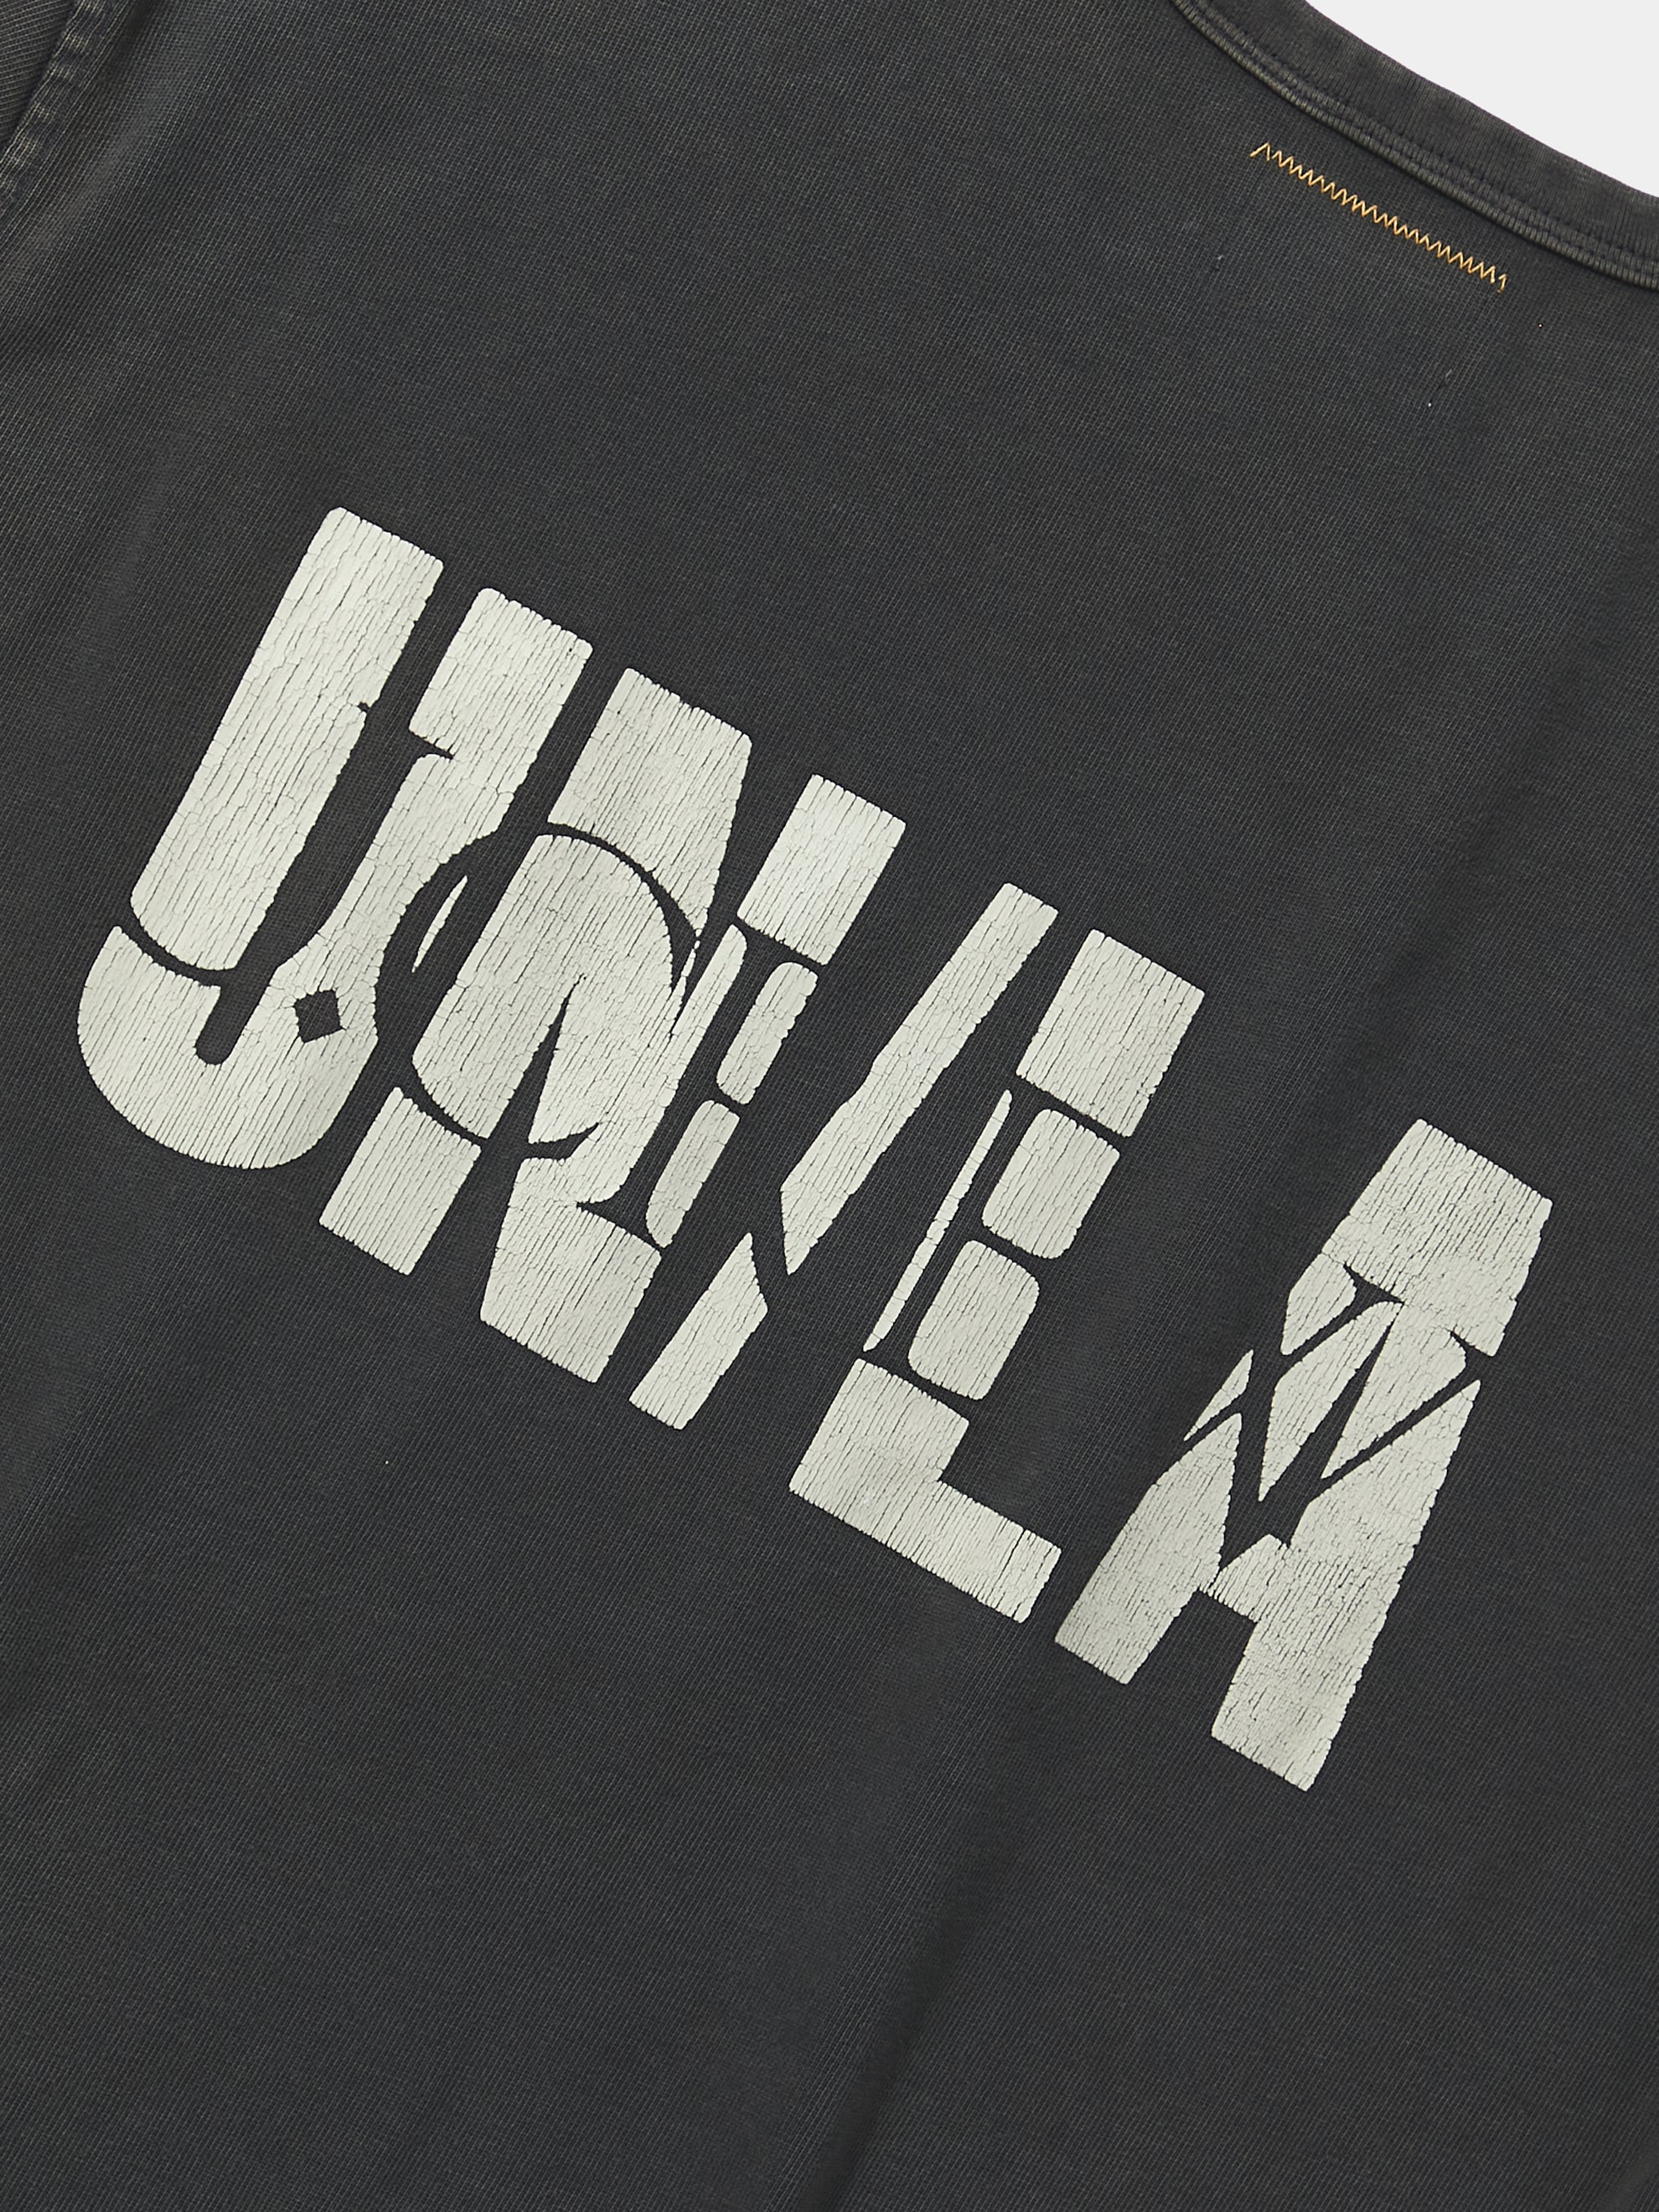 【新品】UNION x J.CREW TEE XL ヴィンテージ Tシャツ 半袖綿100%